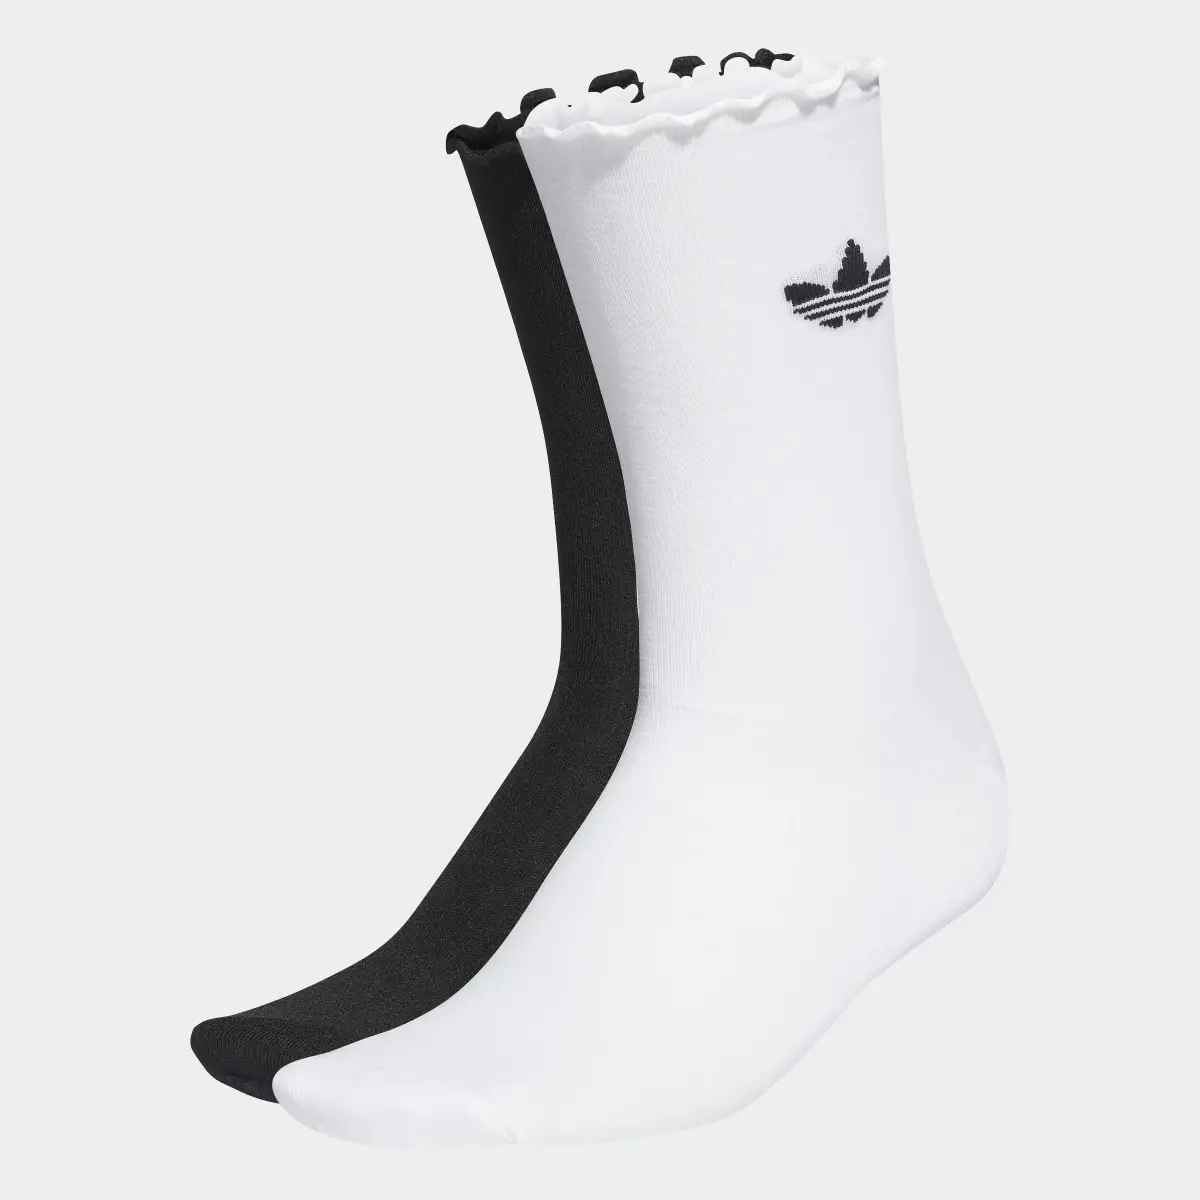 Adidas Semi-Sheer Ruffle Crew Socks 2 Pairs. 1